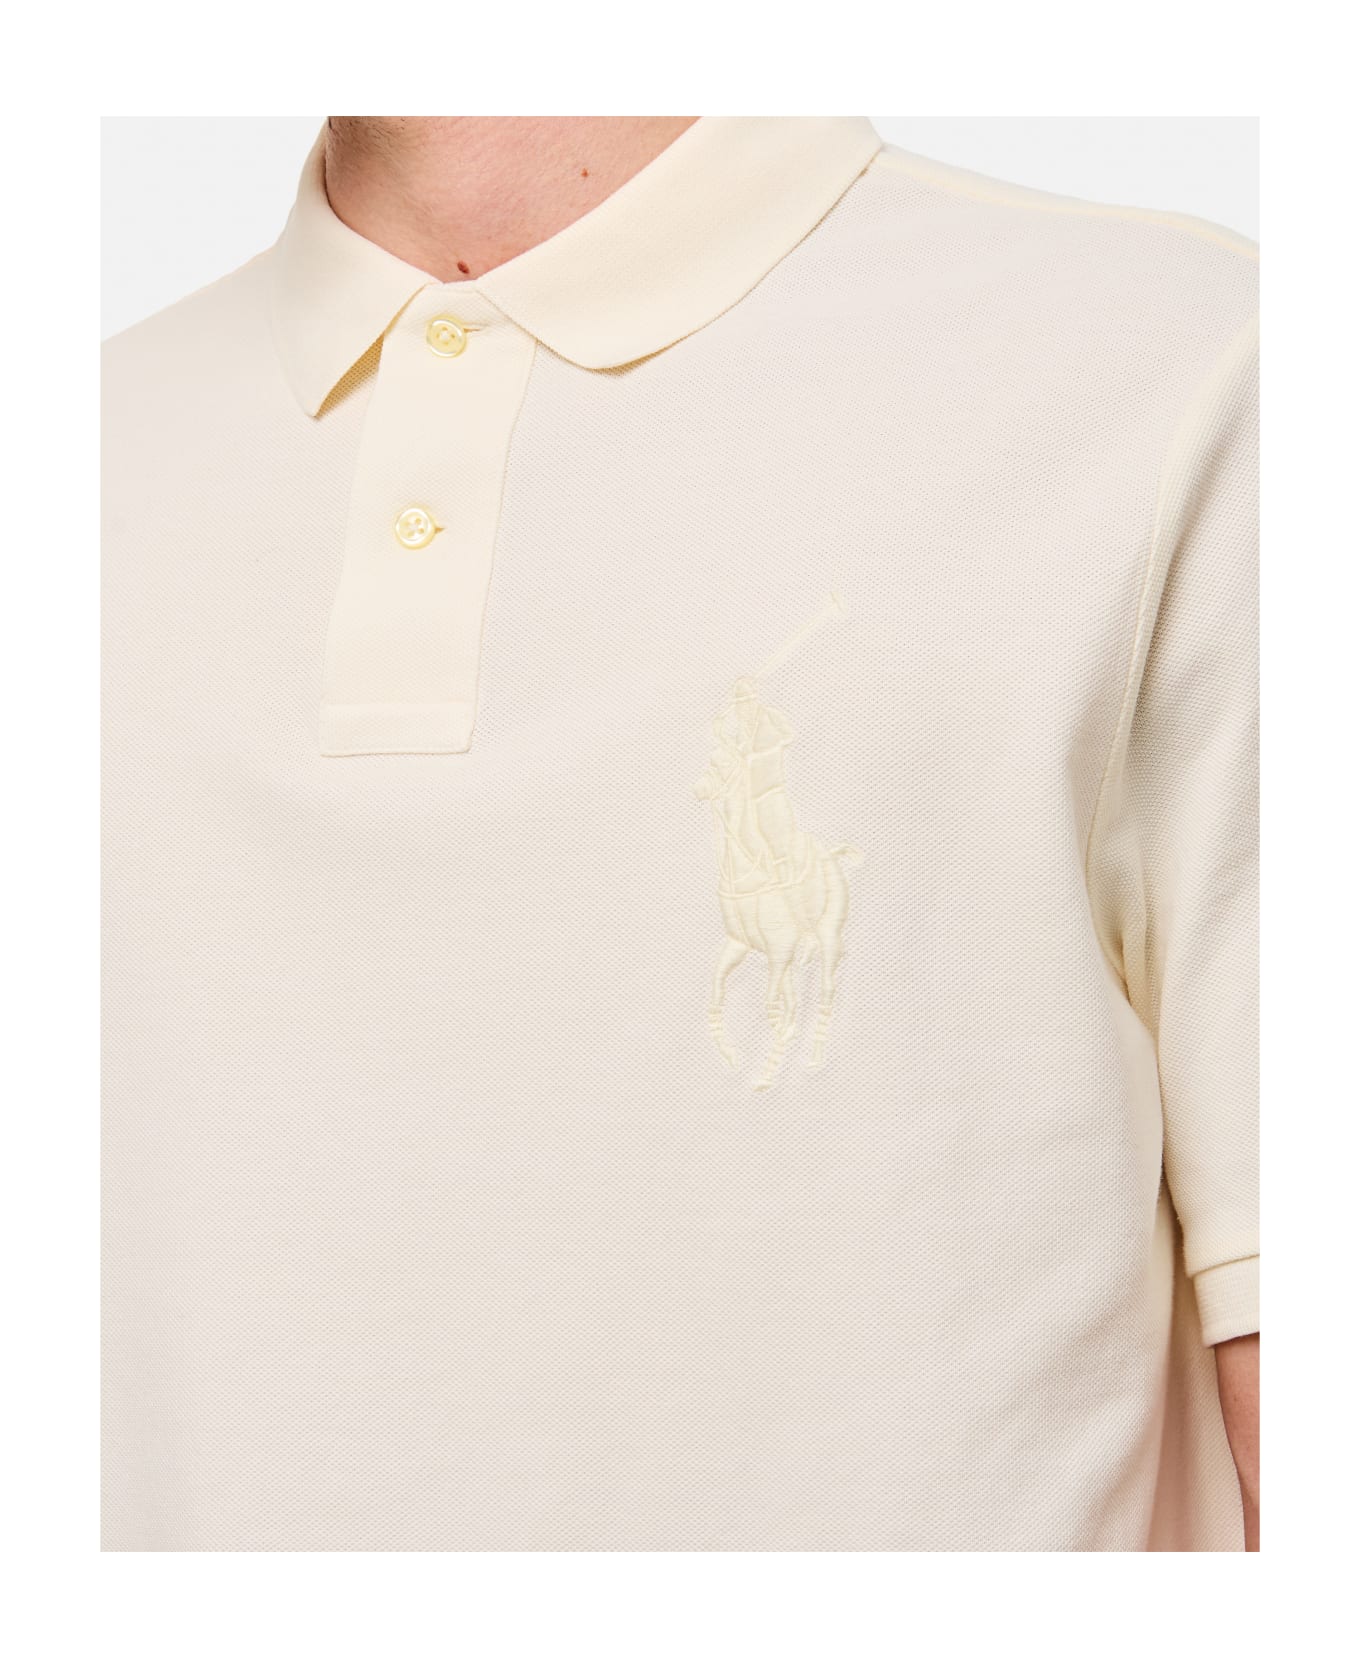 Polo Ralph Lauren Polo Shirt - White